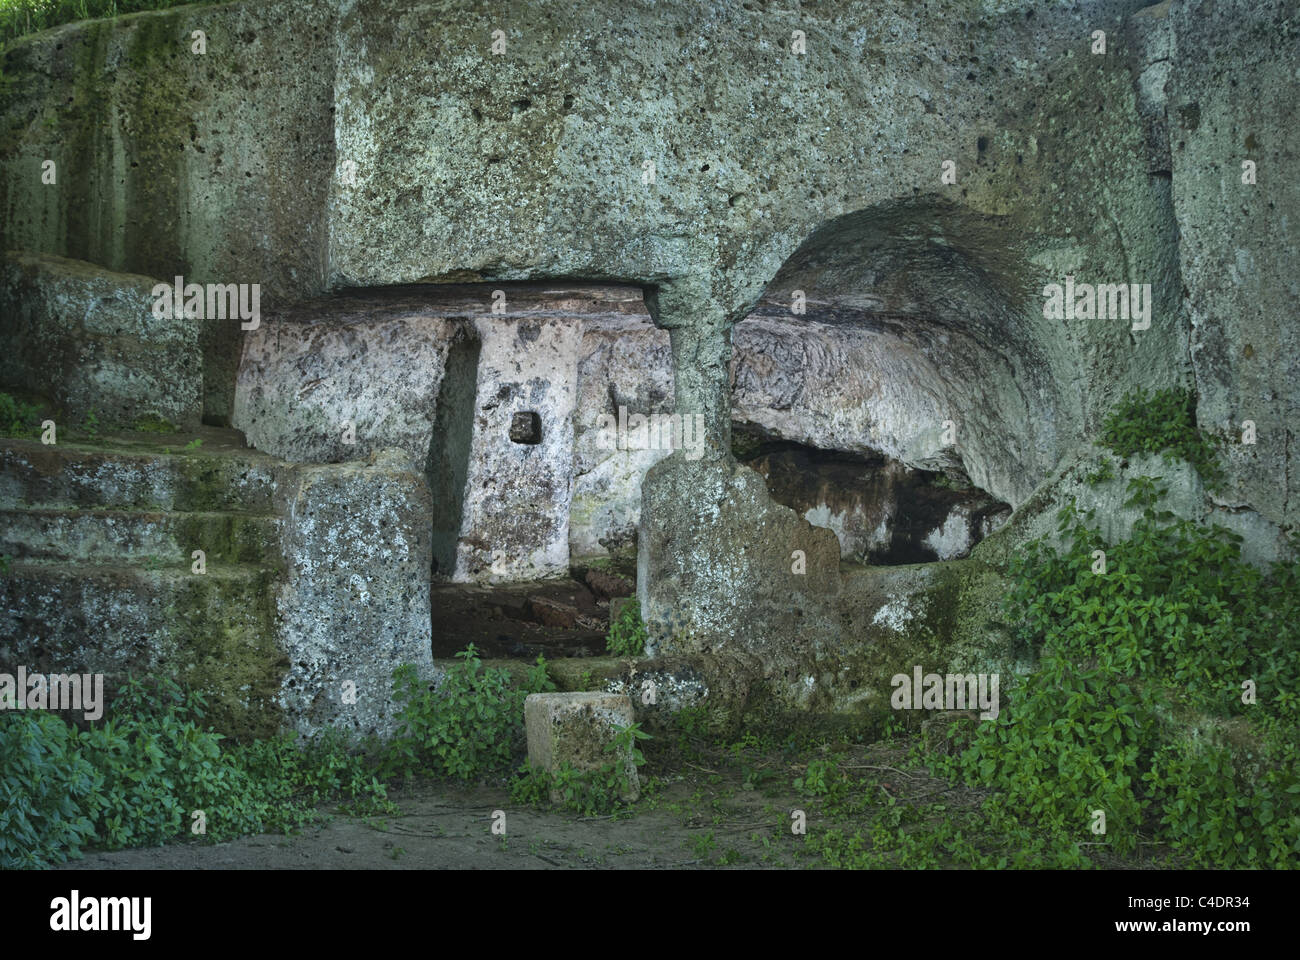 Il cosiddetto "Leader cabina' in Luni sito archeologico, Italia centrale. Foto Stock